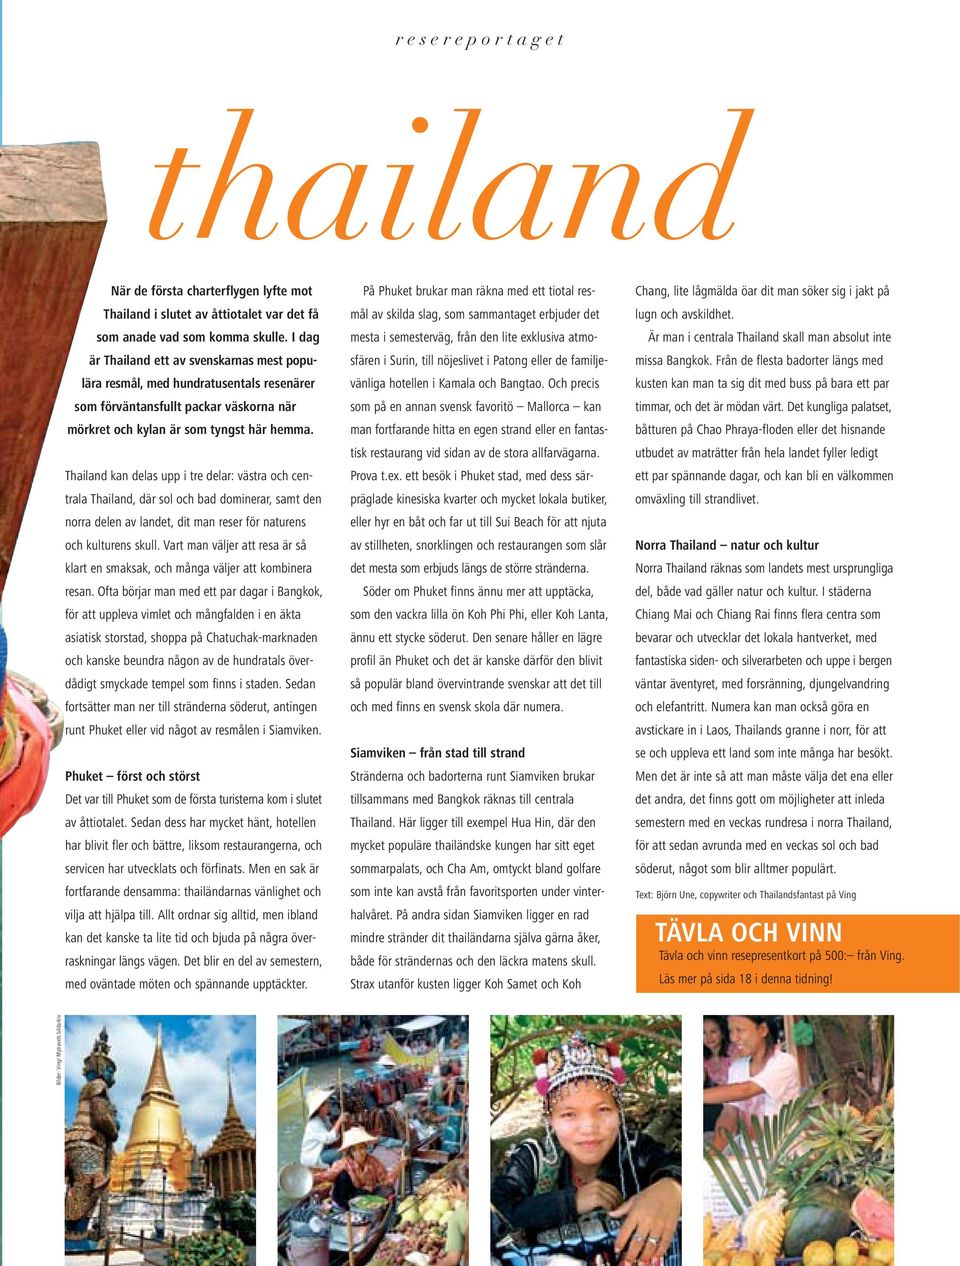 Thailand kan delas upp i tre delar: västra och centrala Thailand, där sol och bad dominerar, samt den norra delen av landet, dit man reser för naturens och kulturens skull.